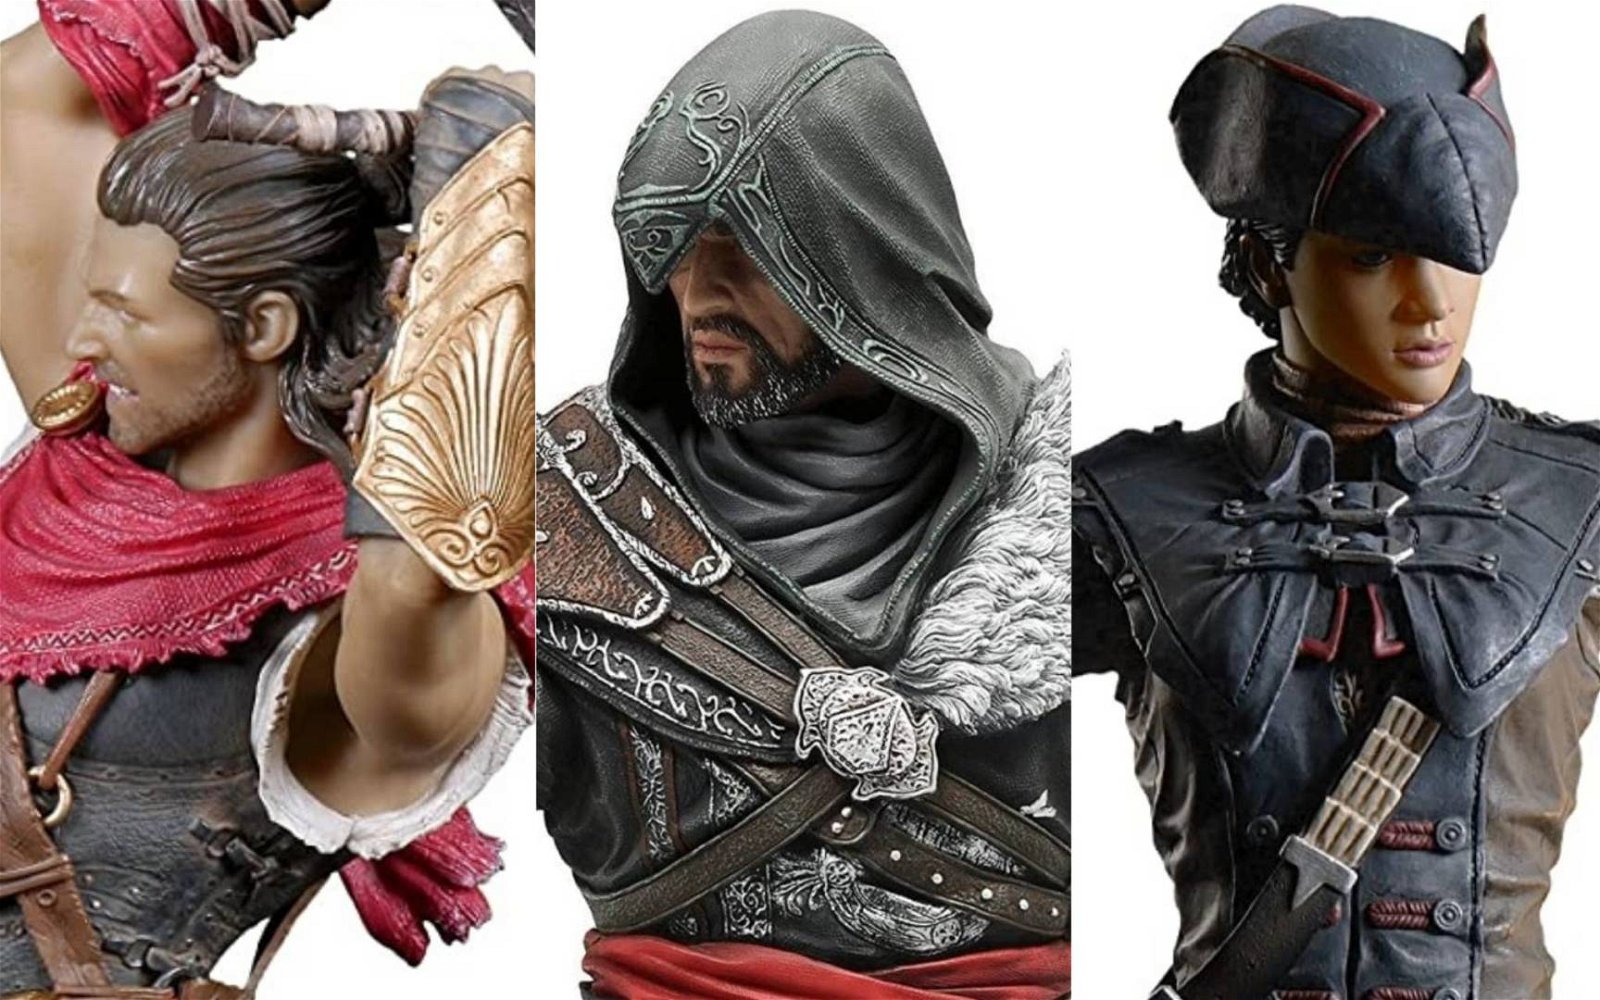 Assassin's Creed: ecco le nuove statuette, aperte le prenotazioni 